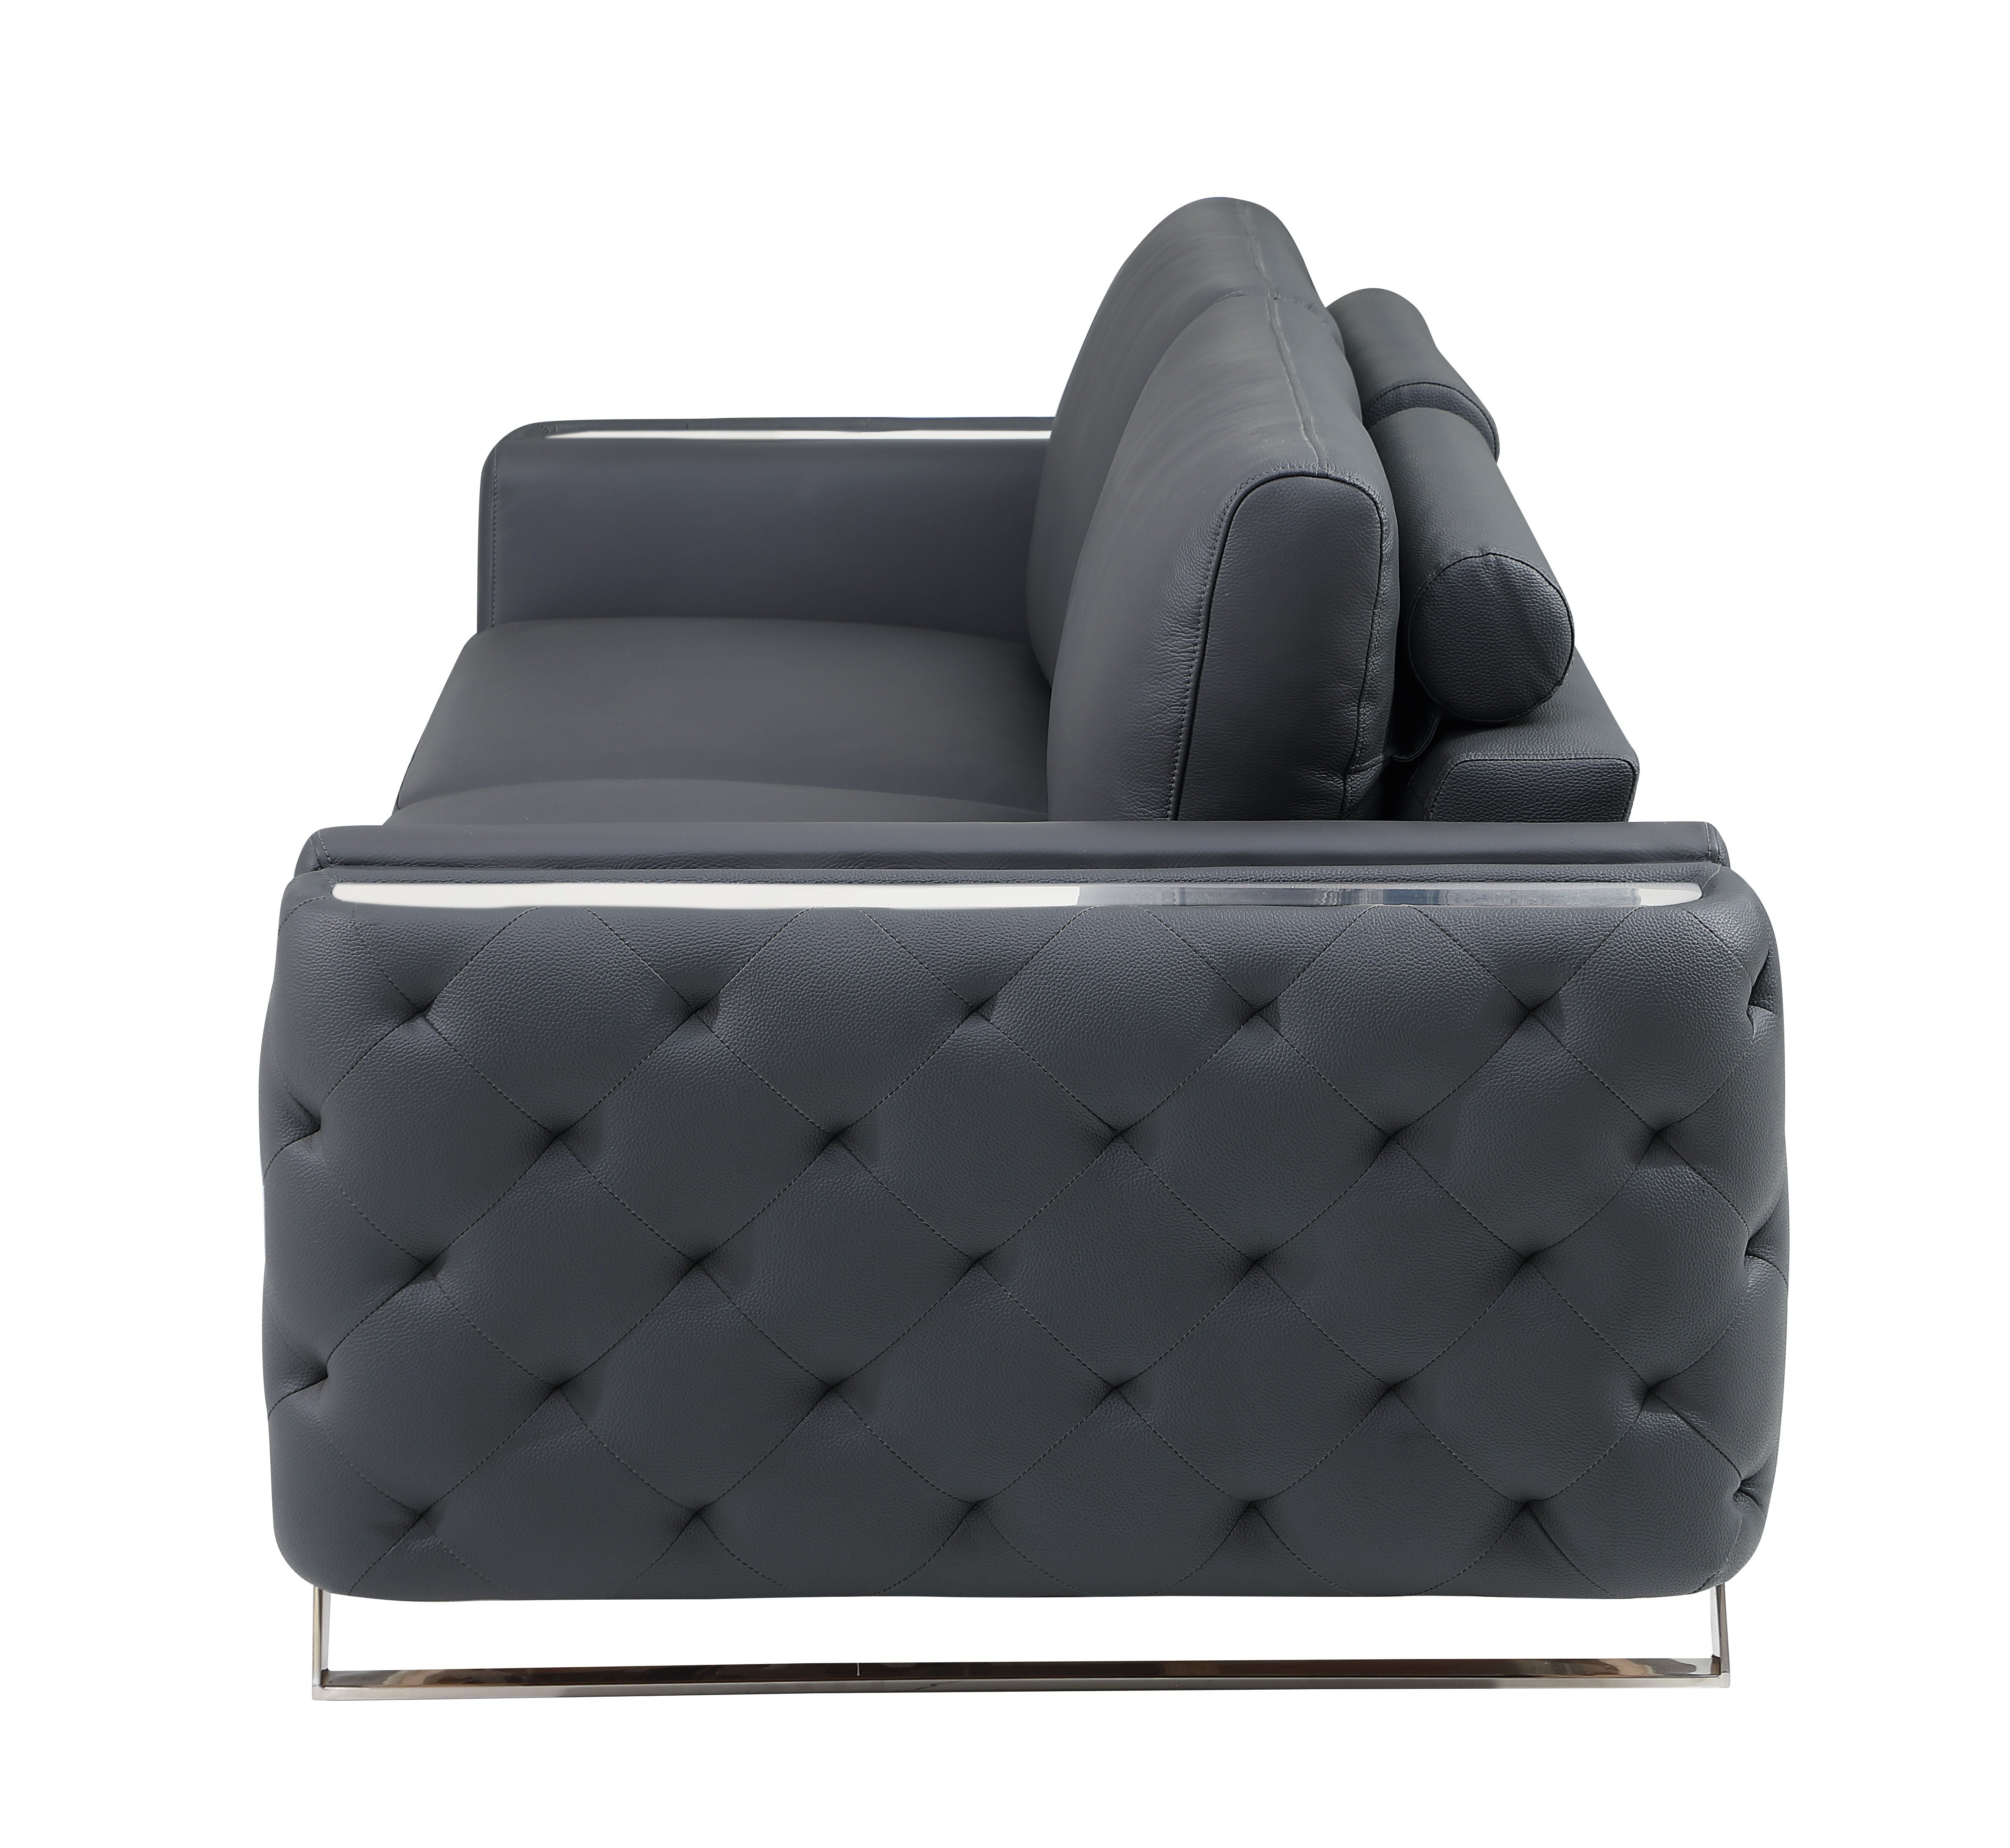 1050 - Contemporary Sofa